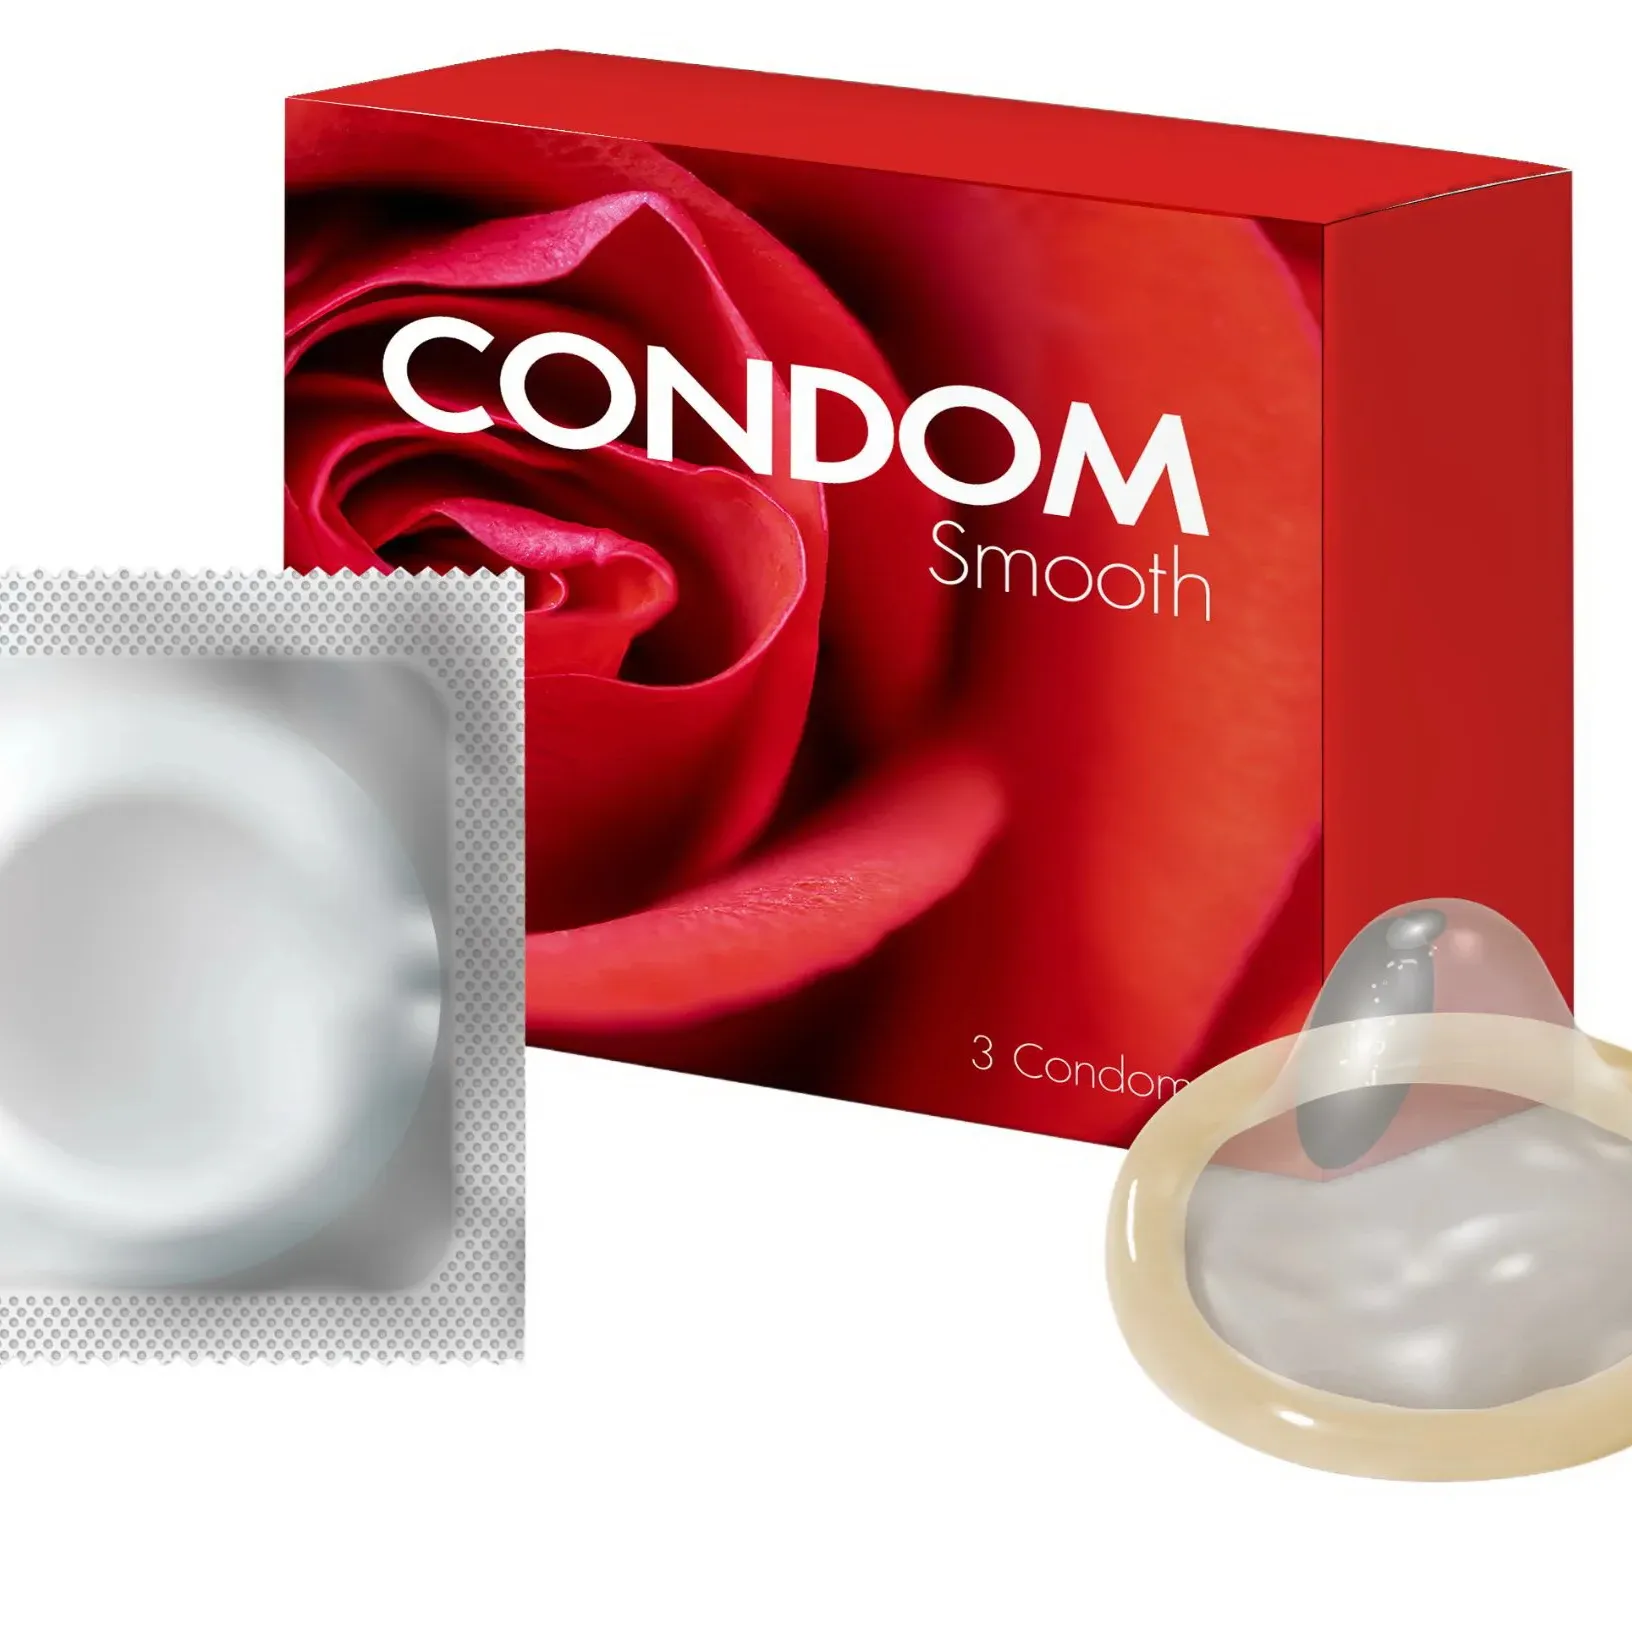 Belirli müşterilere üretim için özel özelliklere sahip erkekler için doğal lateks kauçuktan yapılmış prezervatif OEM ürün